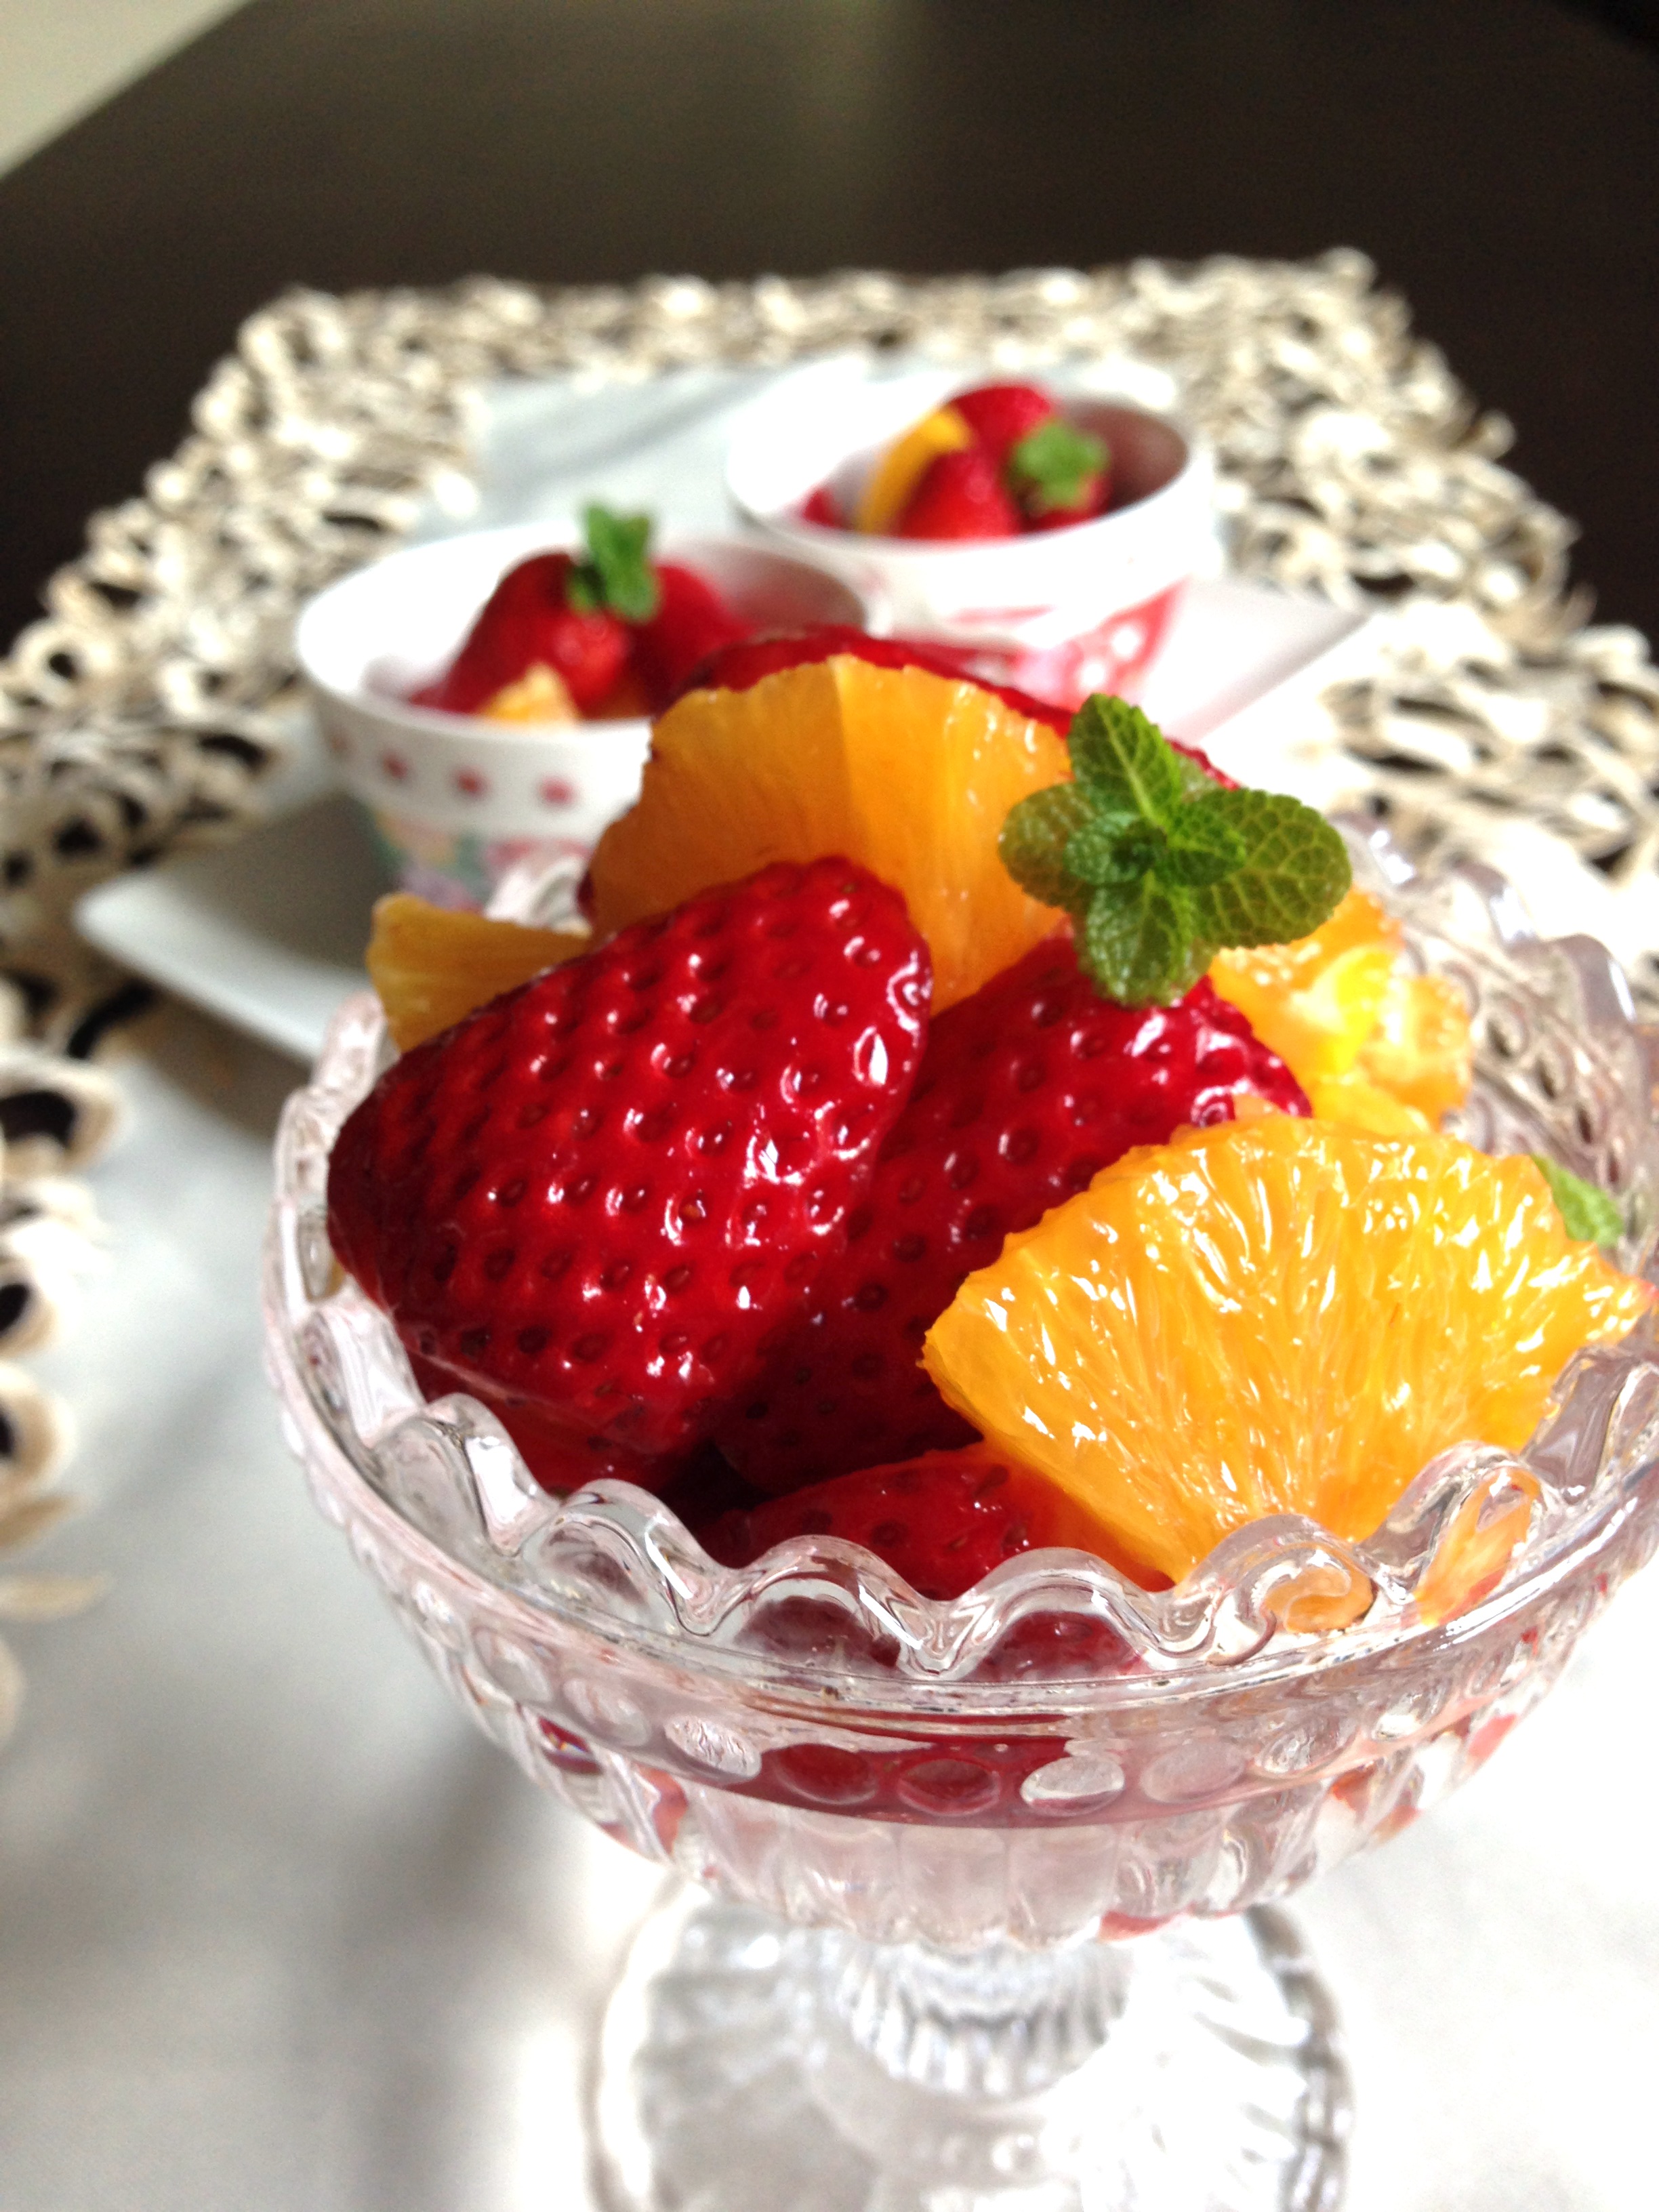 いちごのフルーツマリネのレシピ 作り方 鈴木志麻 料理教室検索サイト クスパ